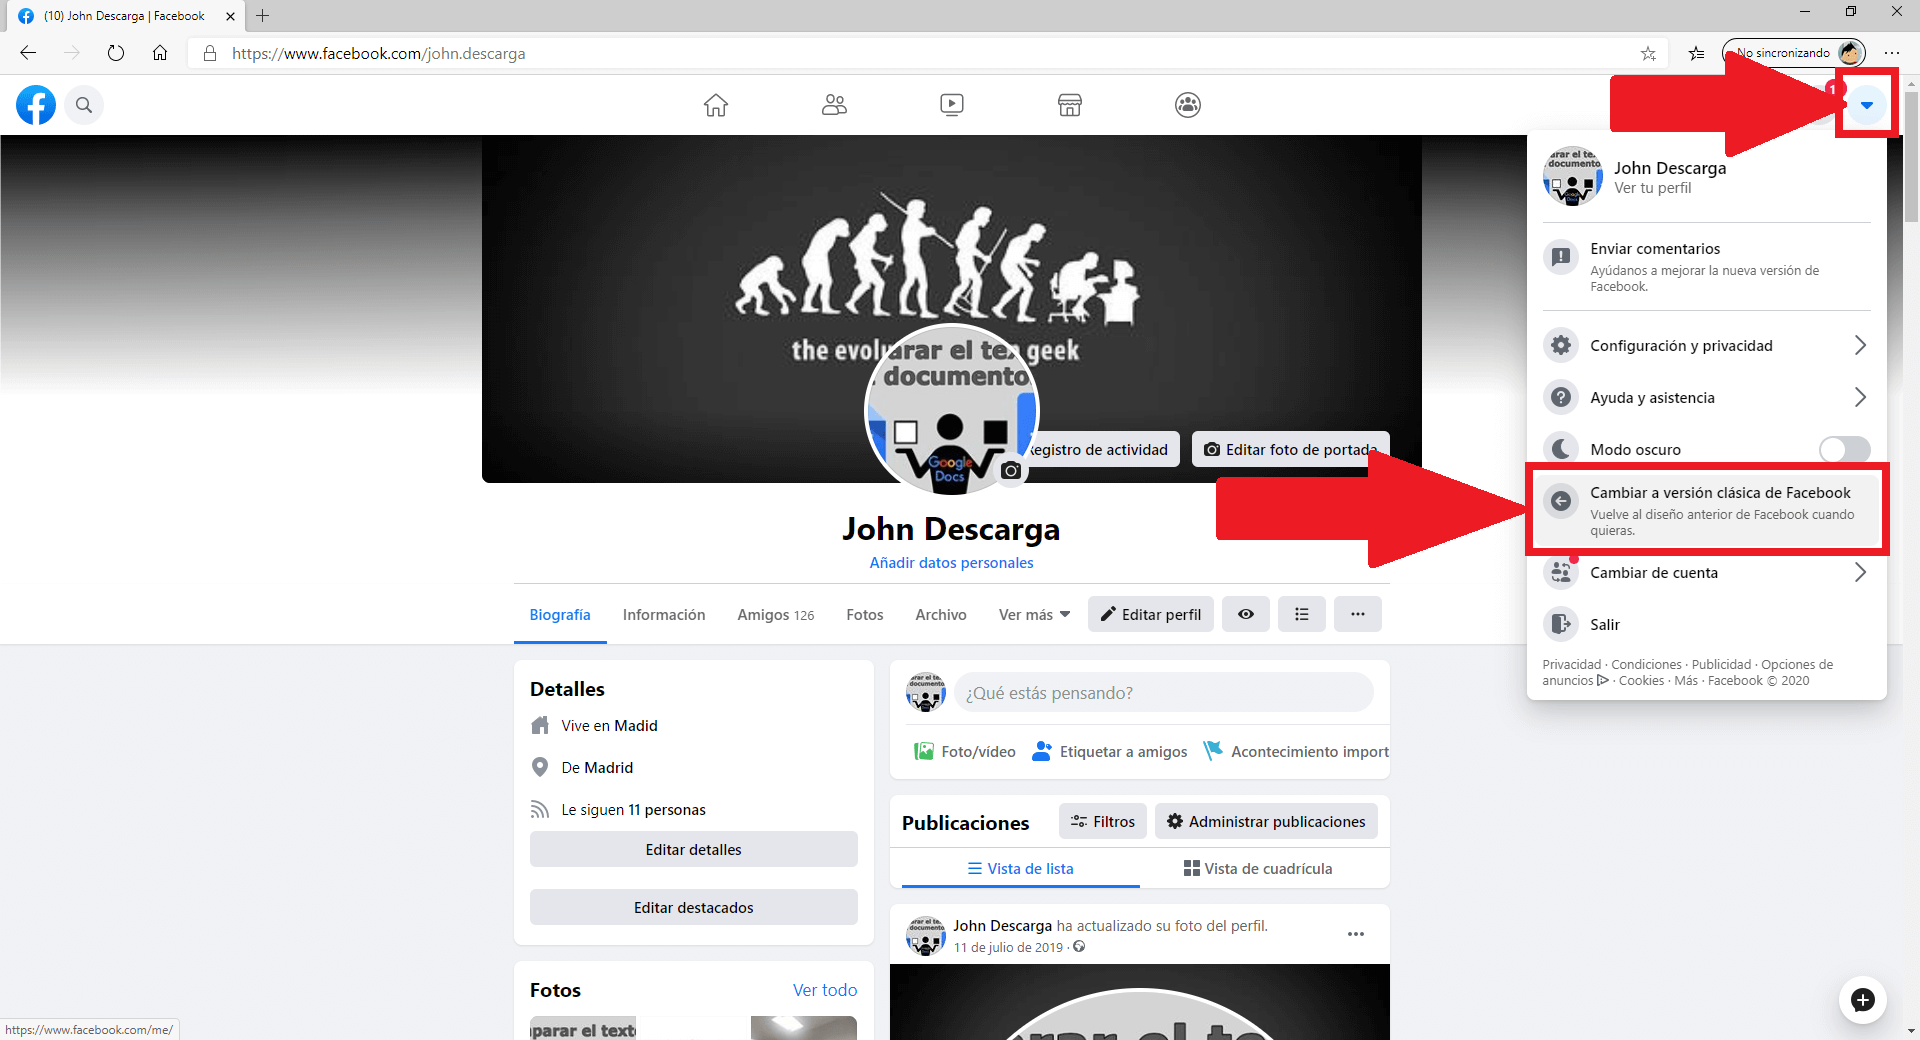 Como activar o desactivar la nueva versión de Facebook.